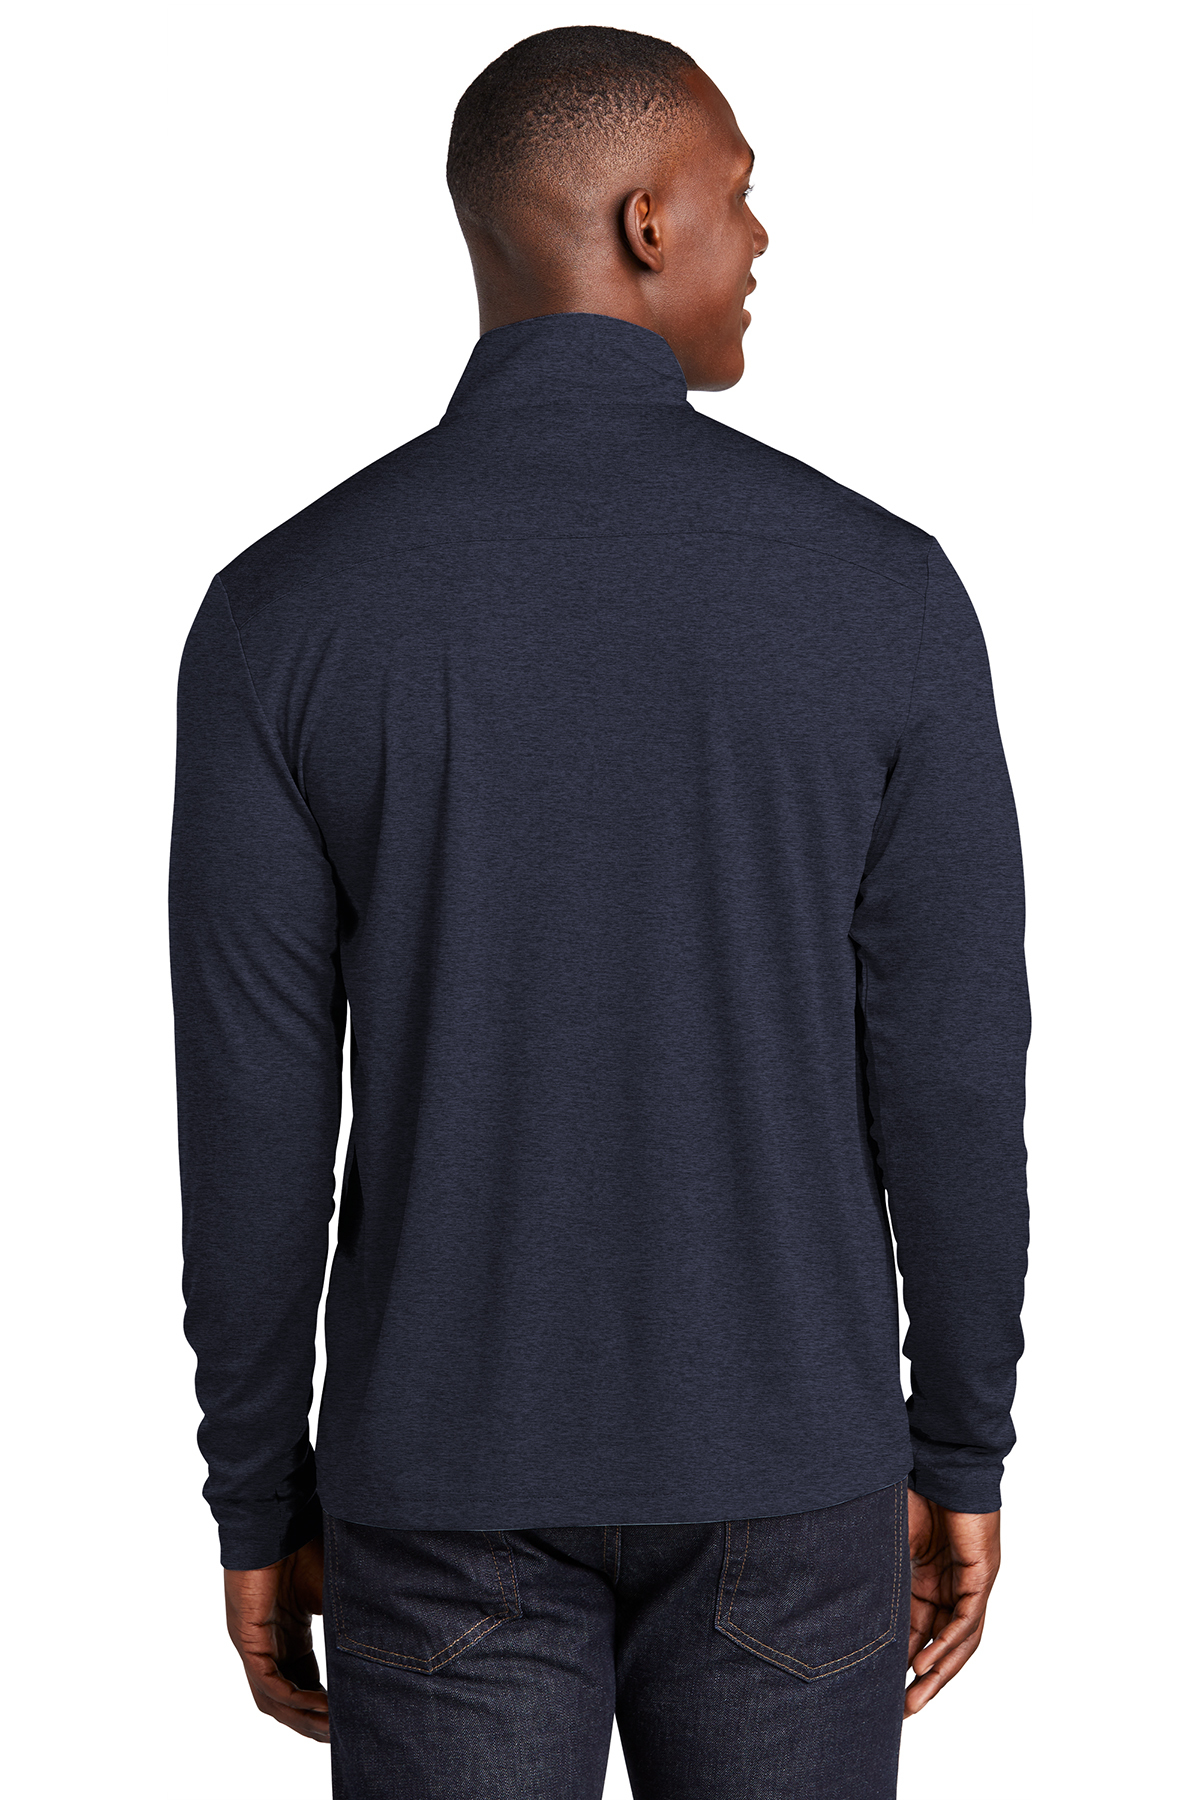 Sport-Tek Endeavor 1/2-Zip Pullover, Product